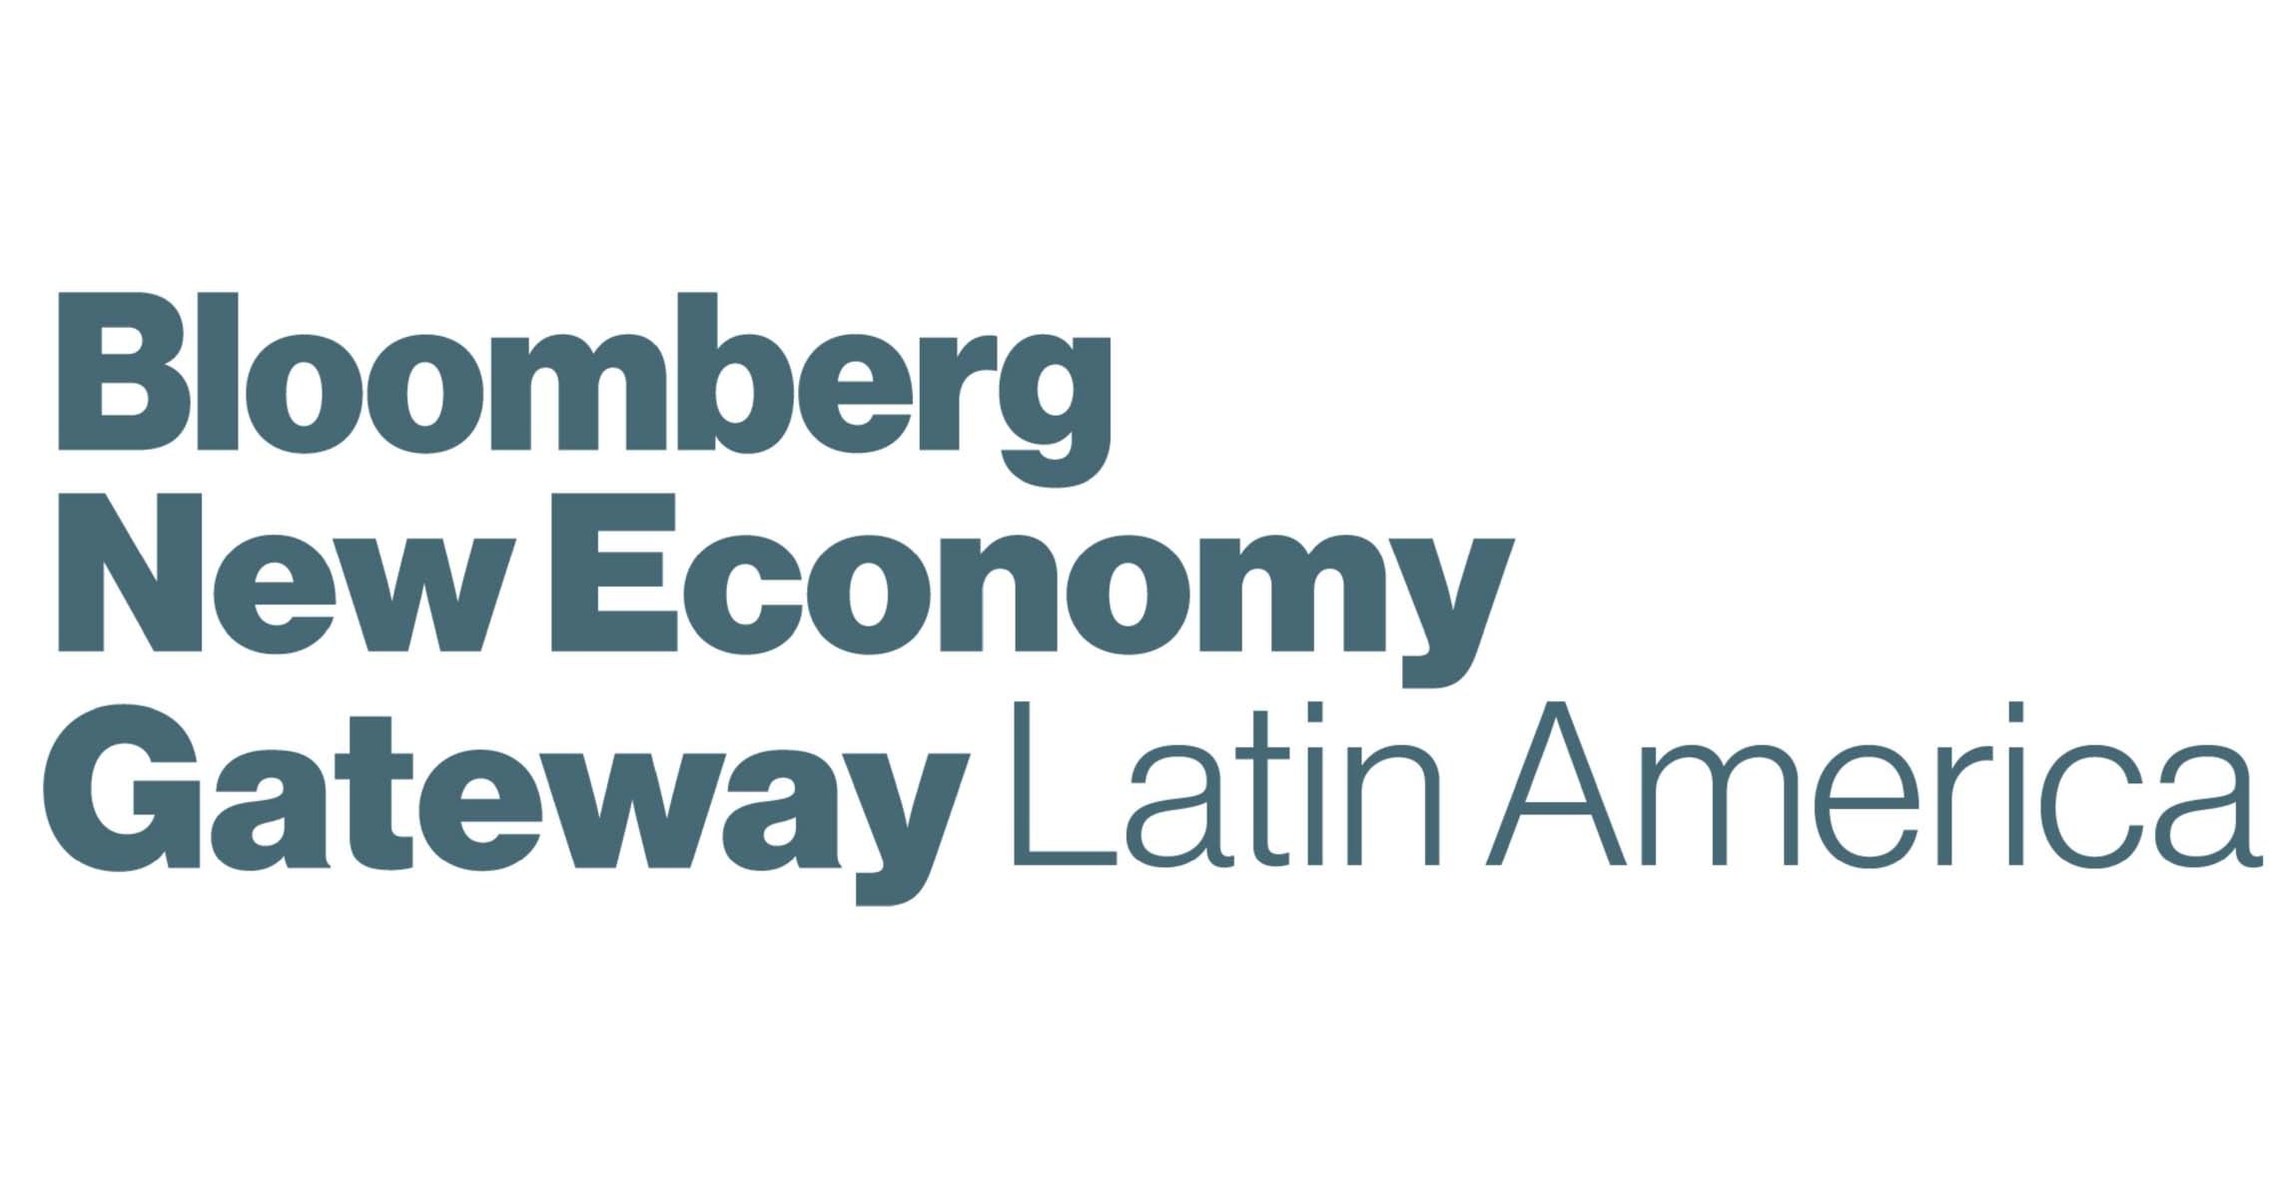 El nuevo portal económico de Bloomberg atrae a oradores globales y latinoamericanos